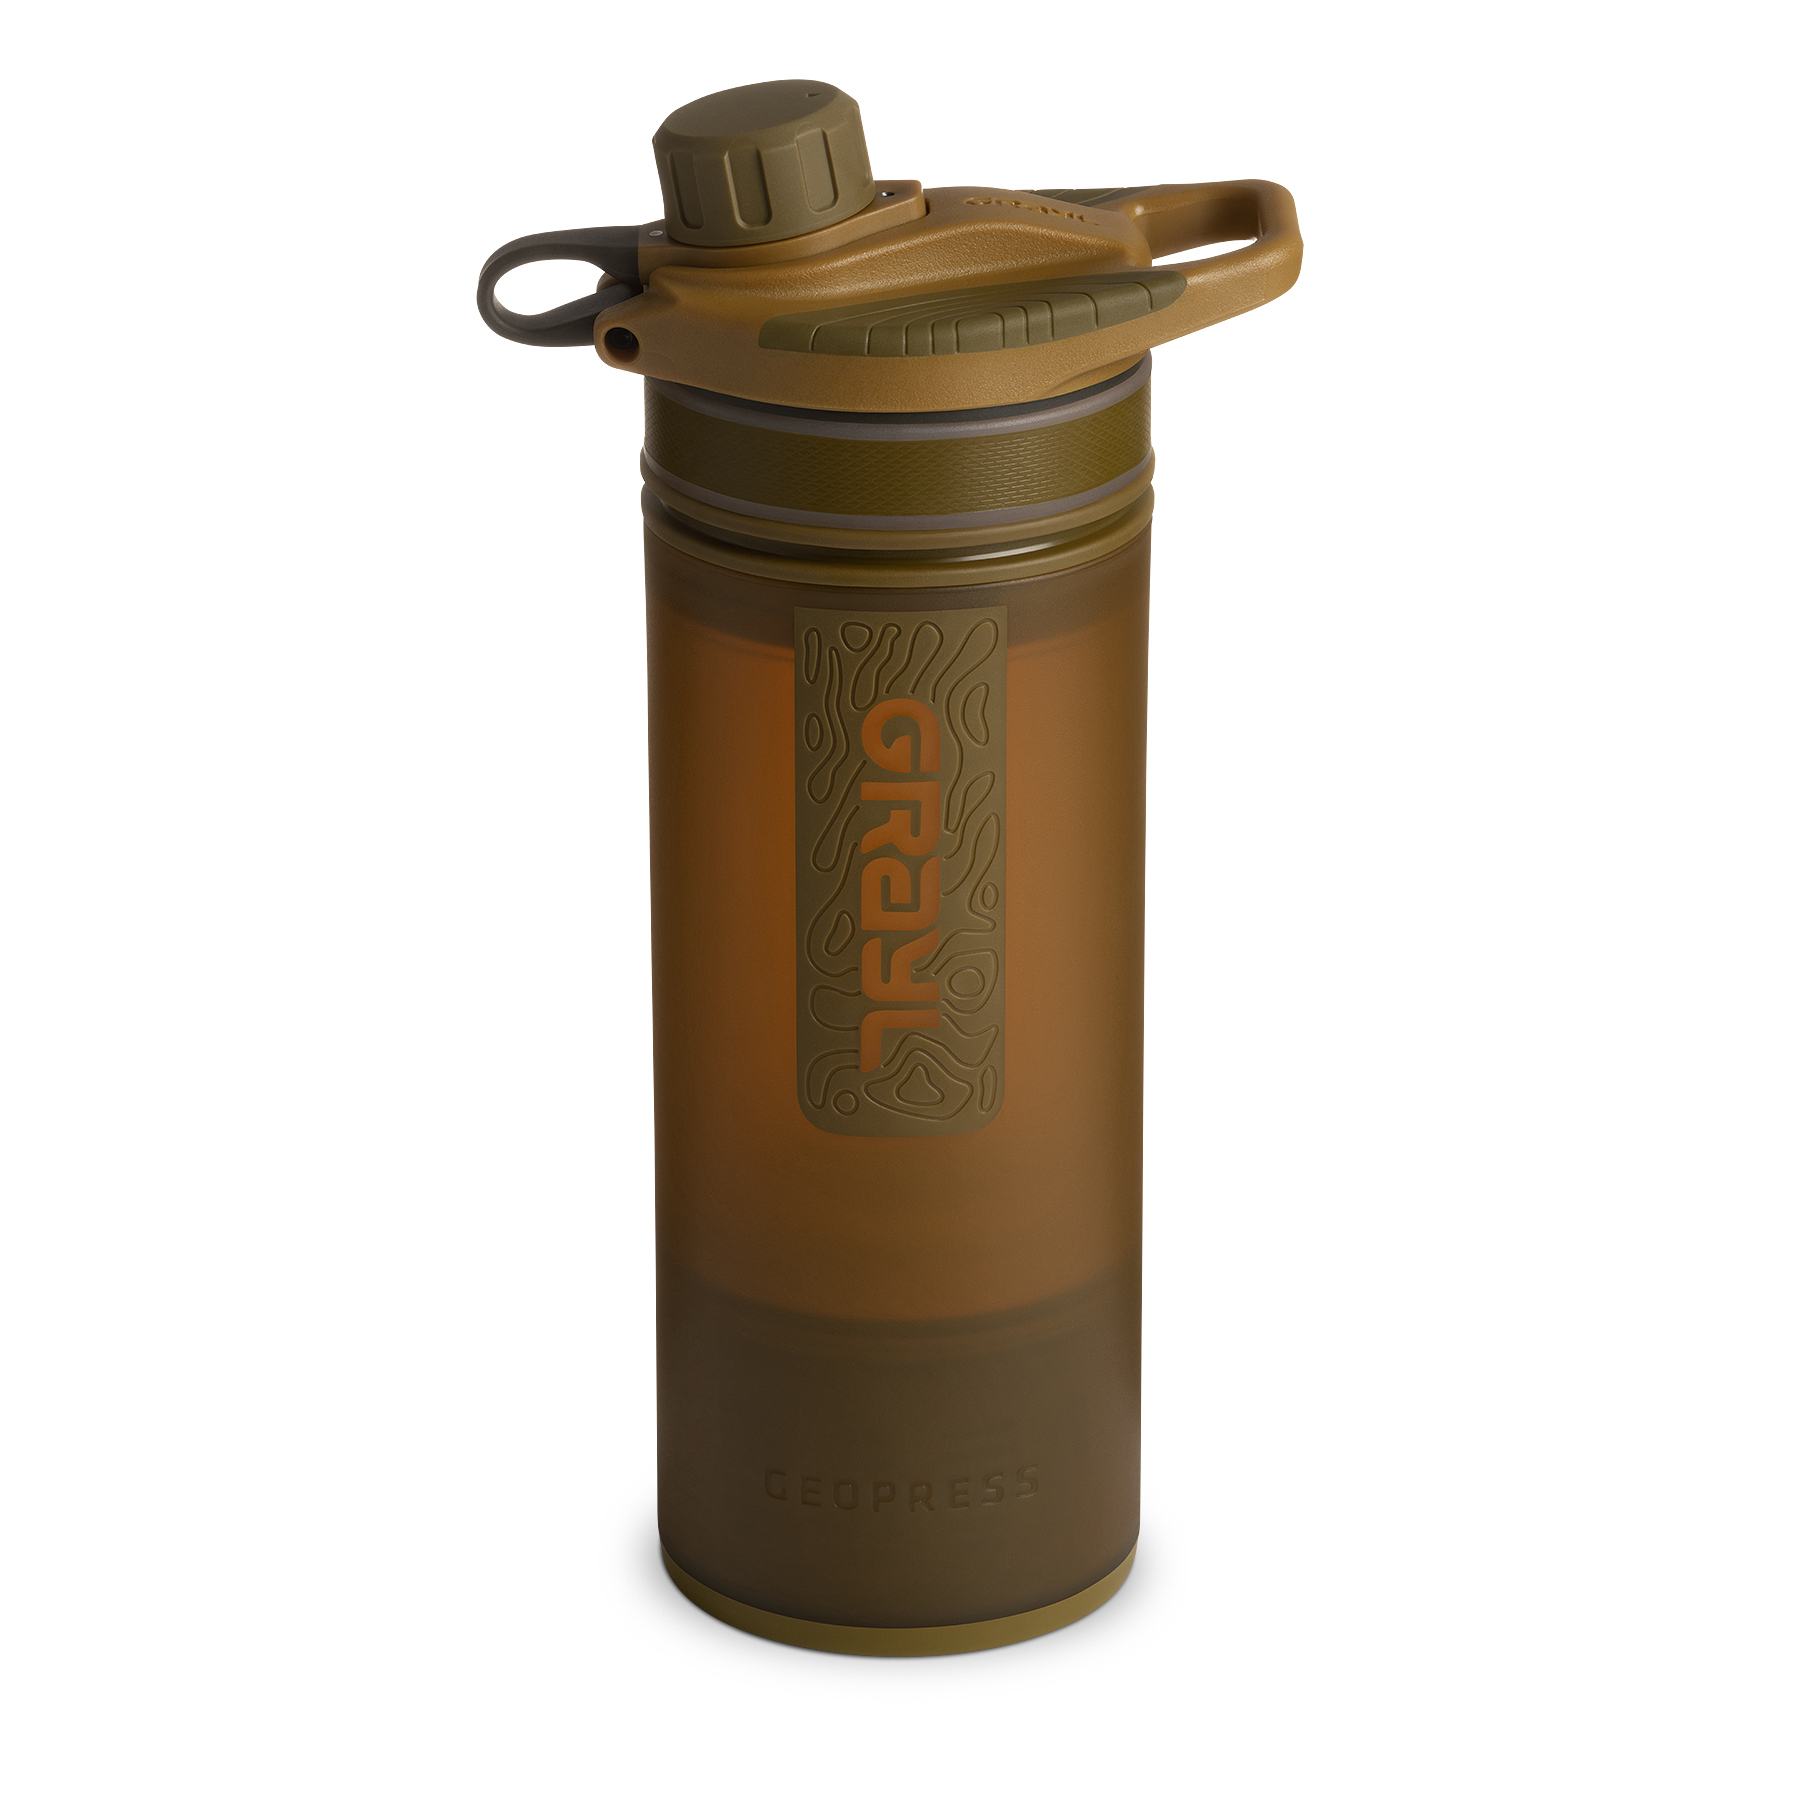 Produktbild von Grayl GeoPress Trinkflasche mit Wasserfilter - 710ml - Coyote Brown